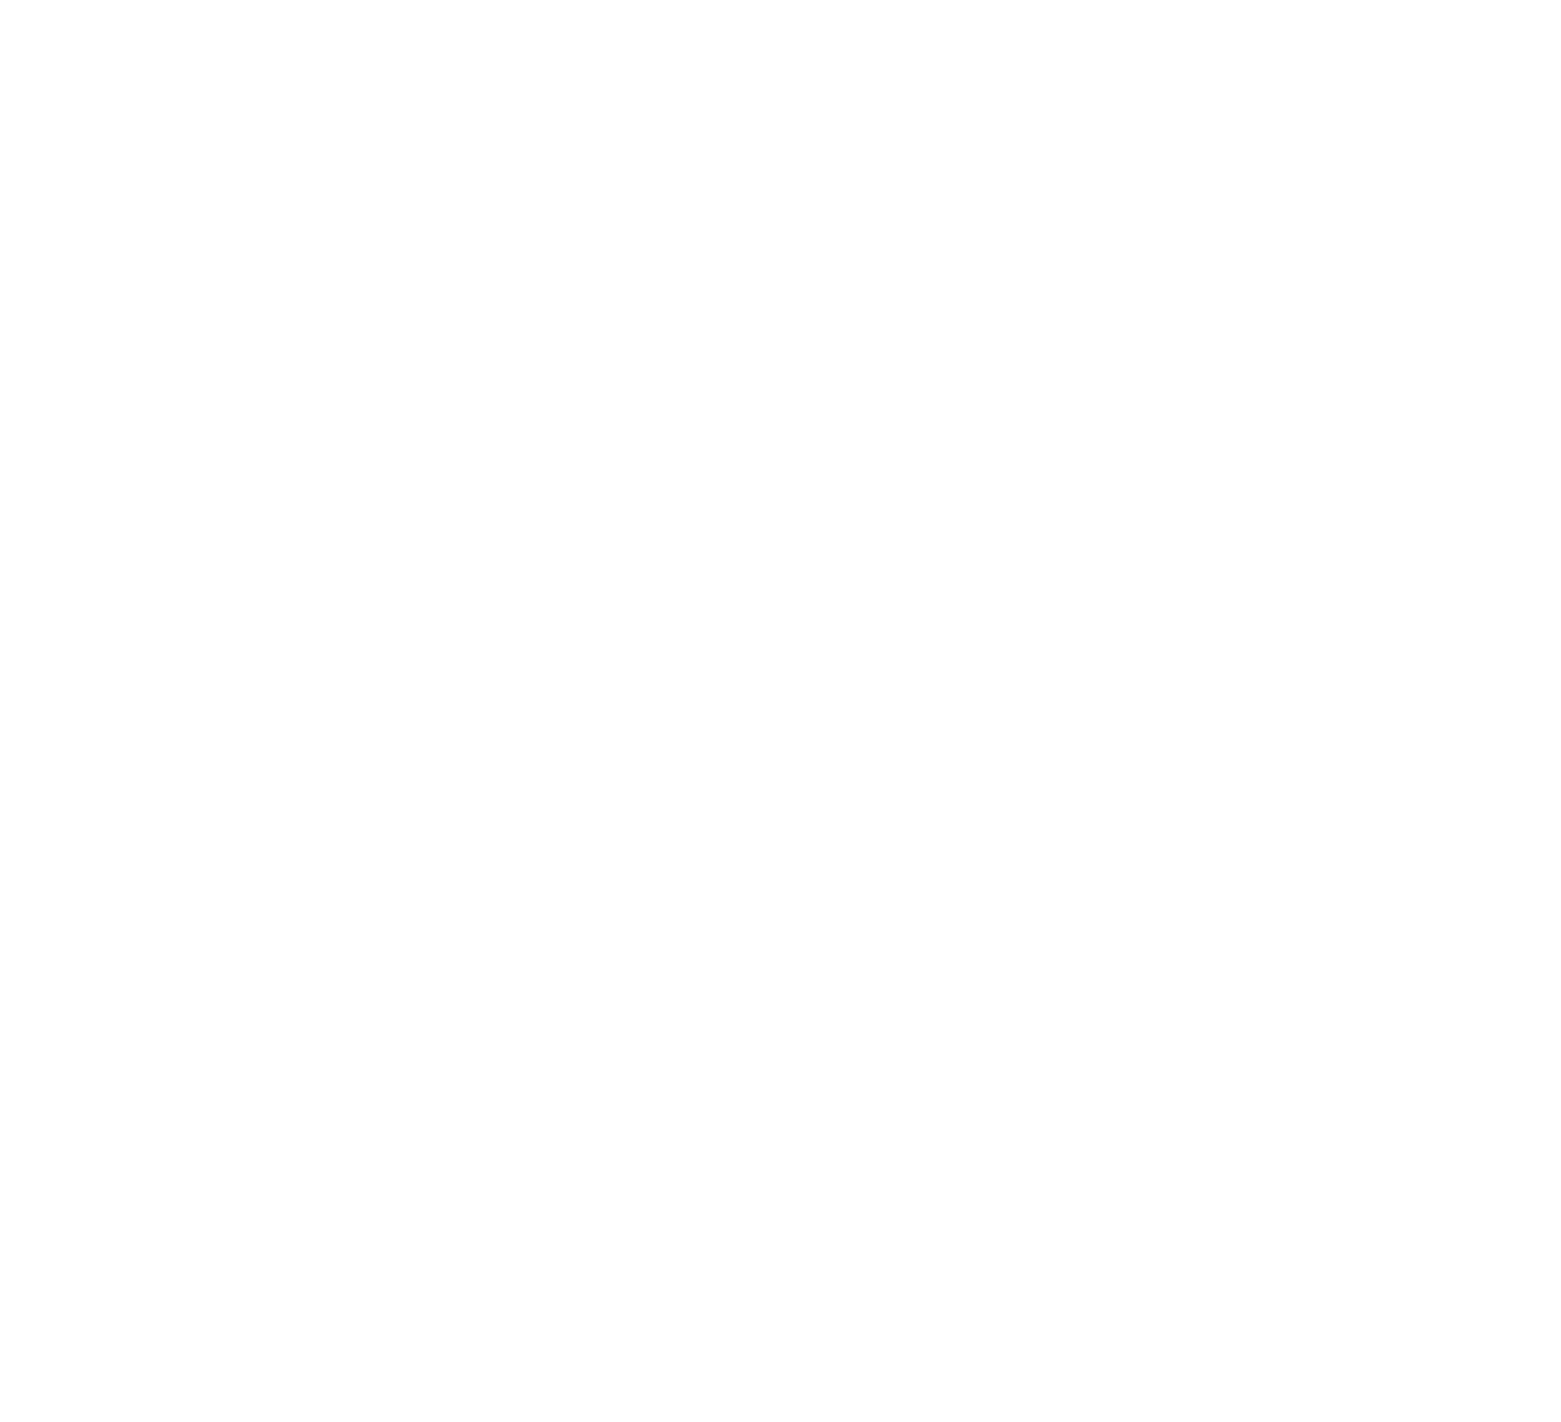 Adler Group logo for dark backgrounds (transparent PNG)